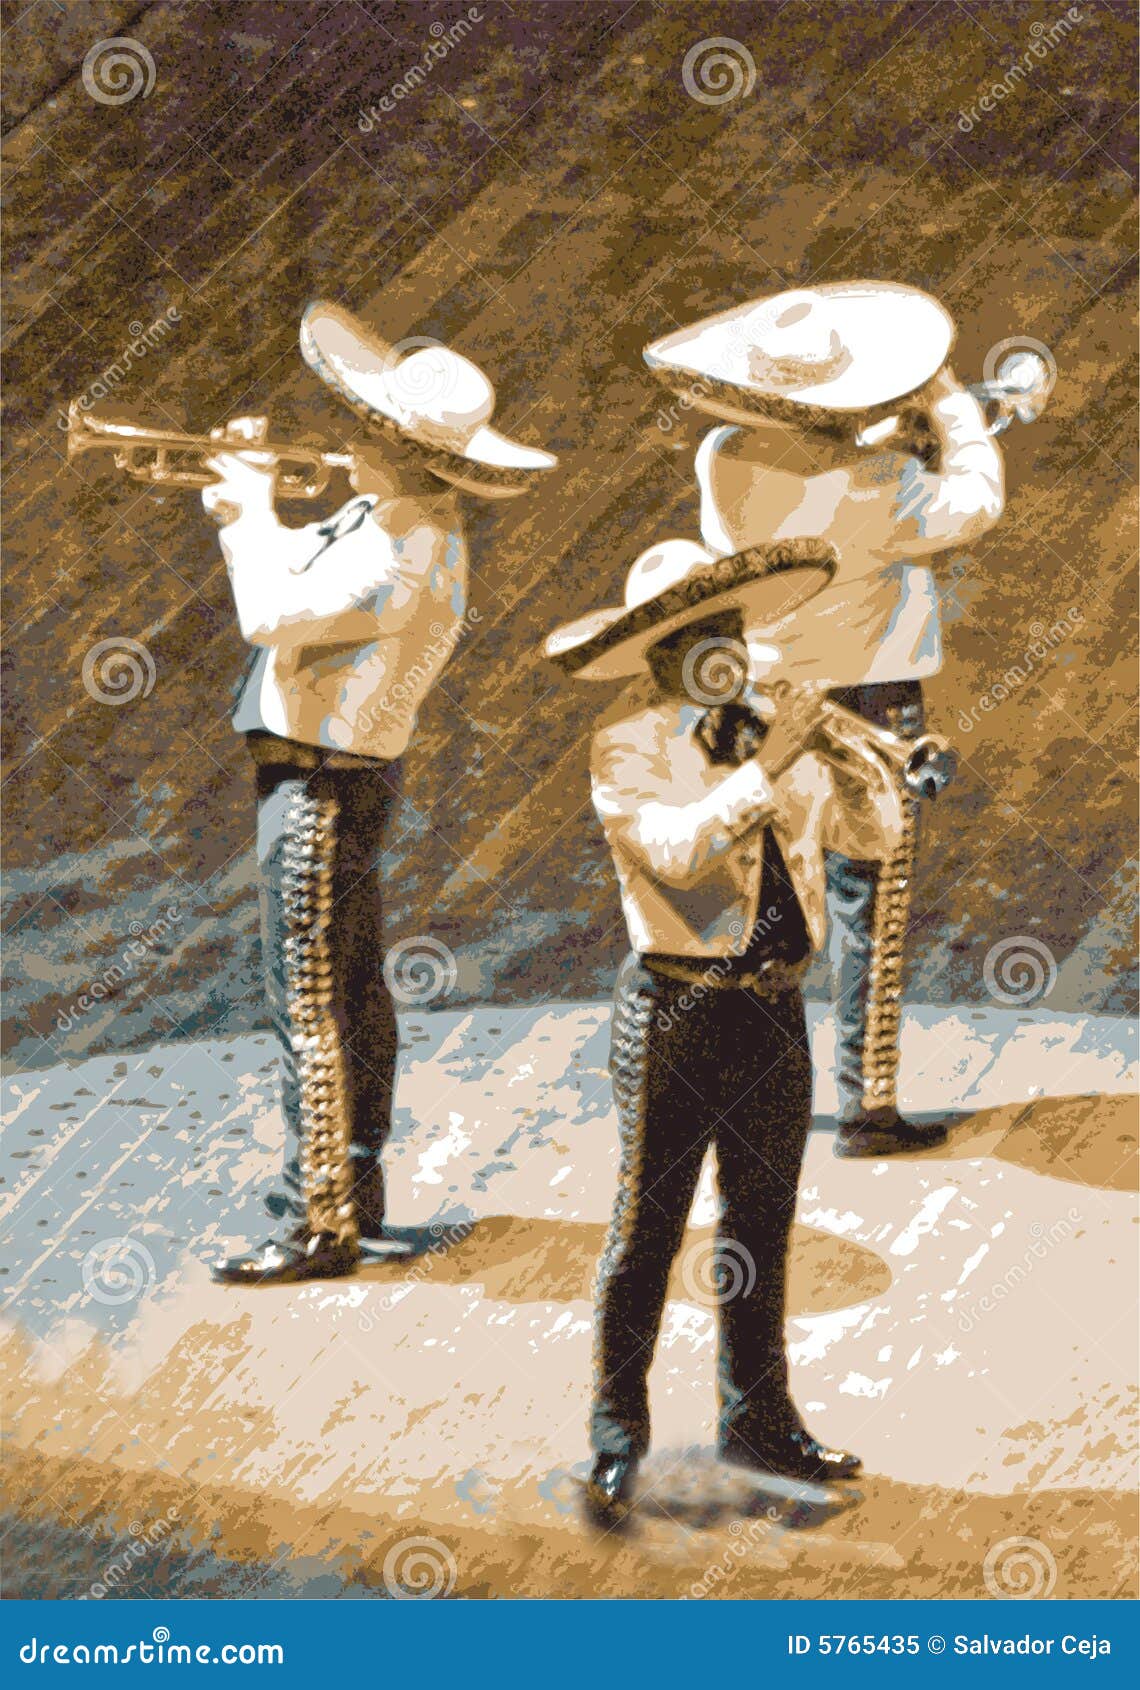 mariachi, trumpet musicians